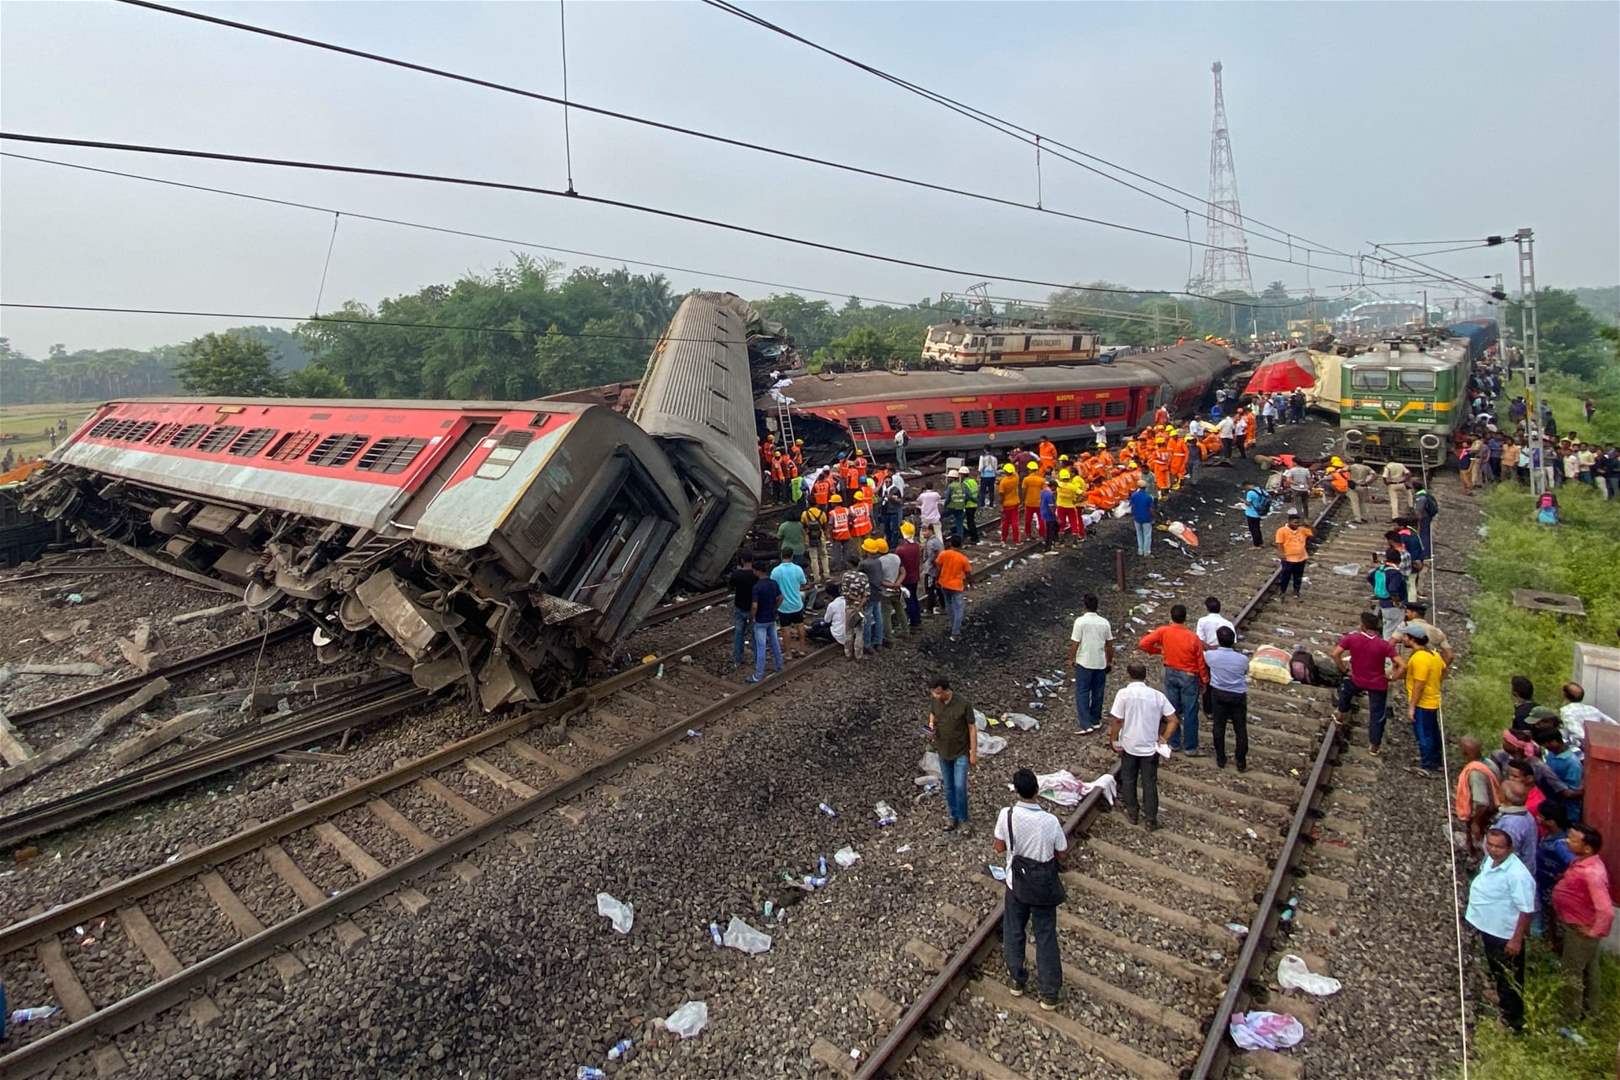 بالفيديو - مئات القتلى والجرحى في حادث تصادم قطارات في الهند